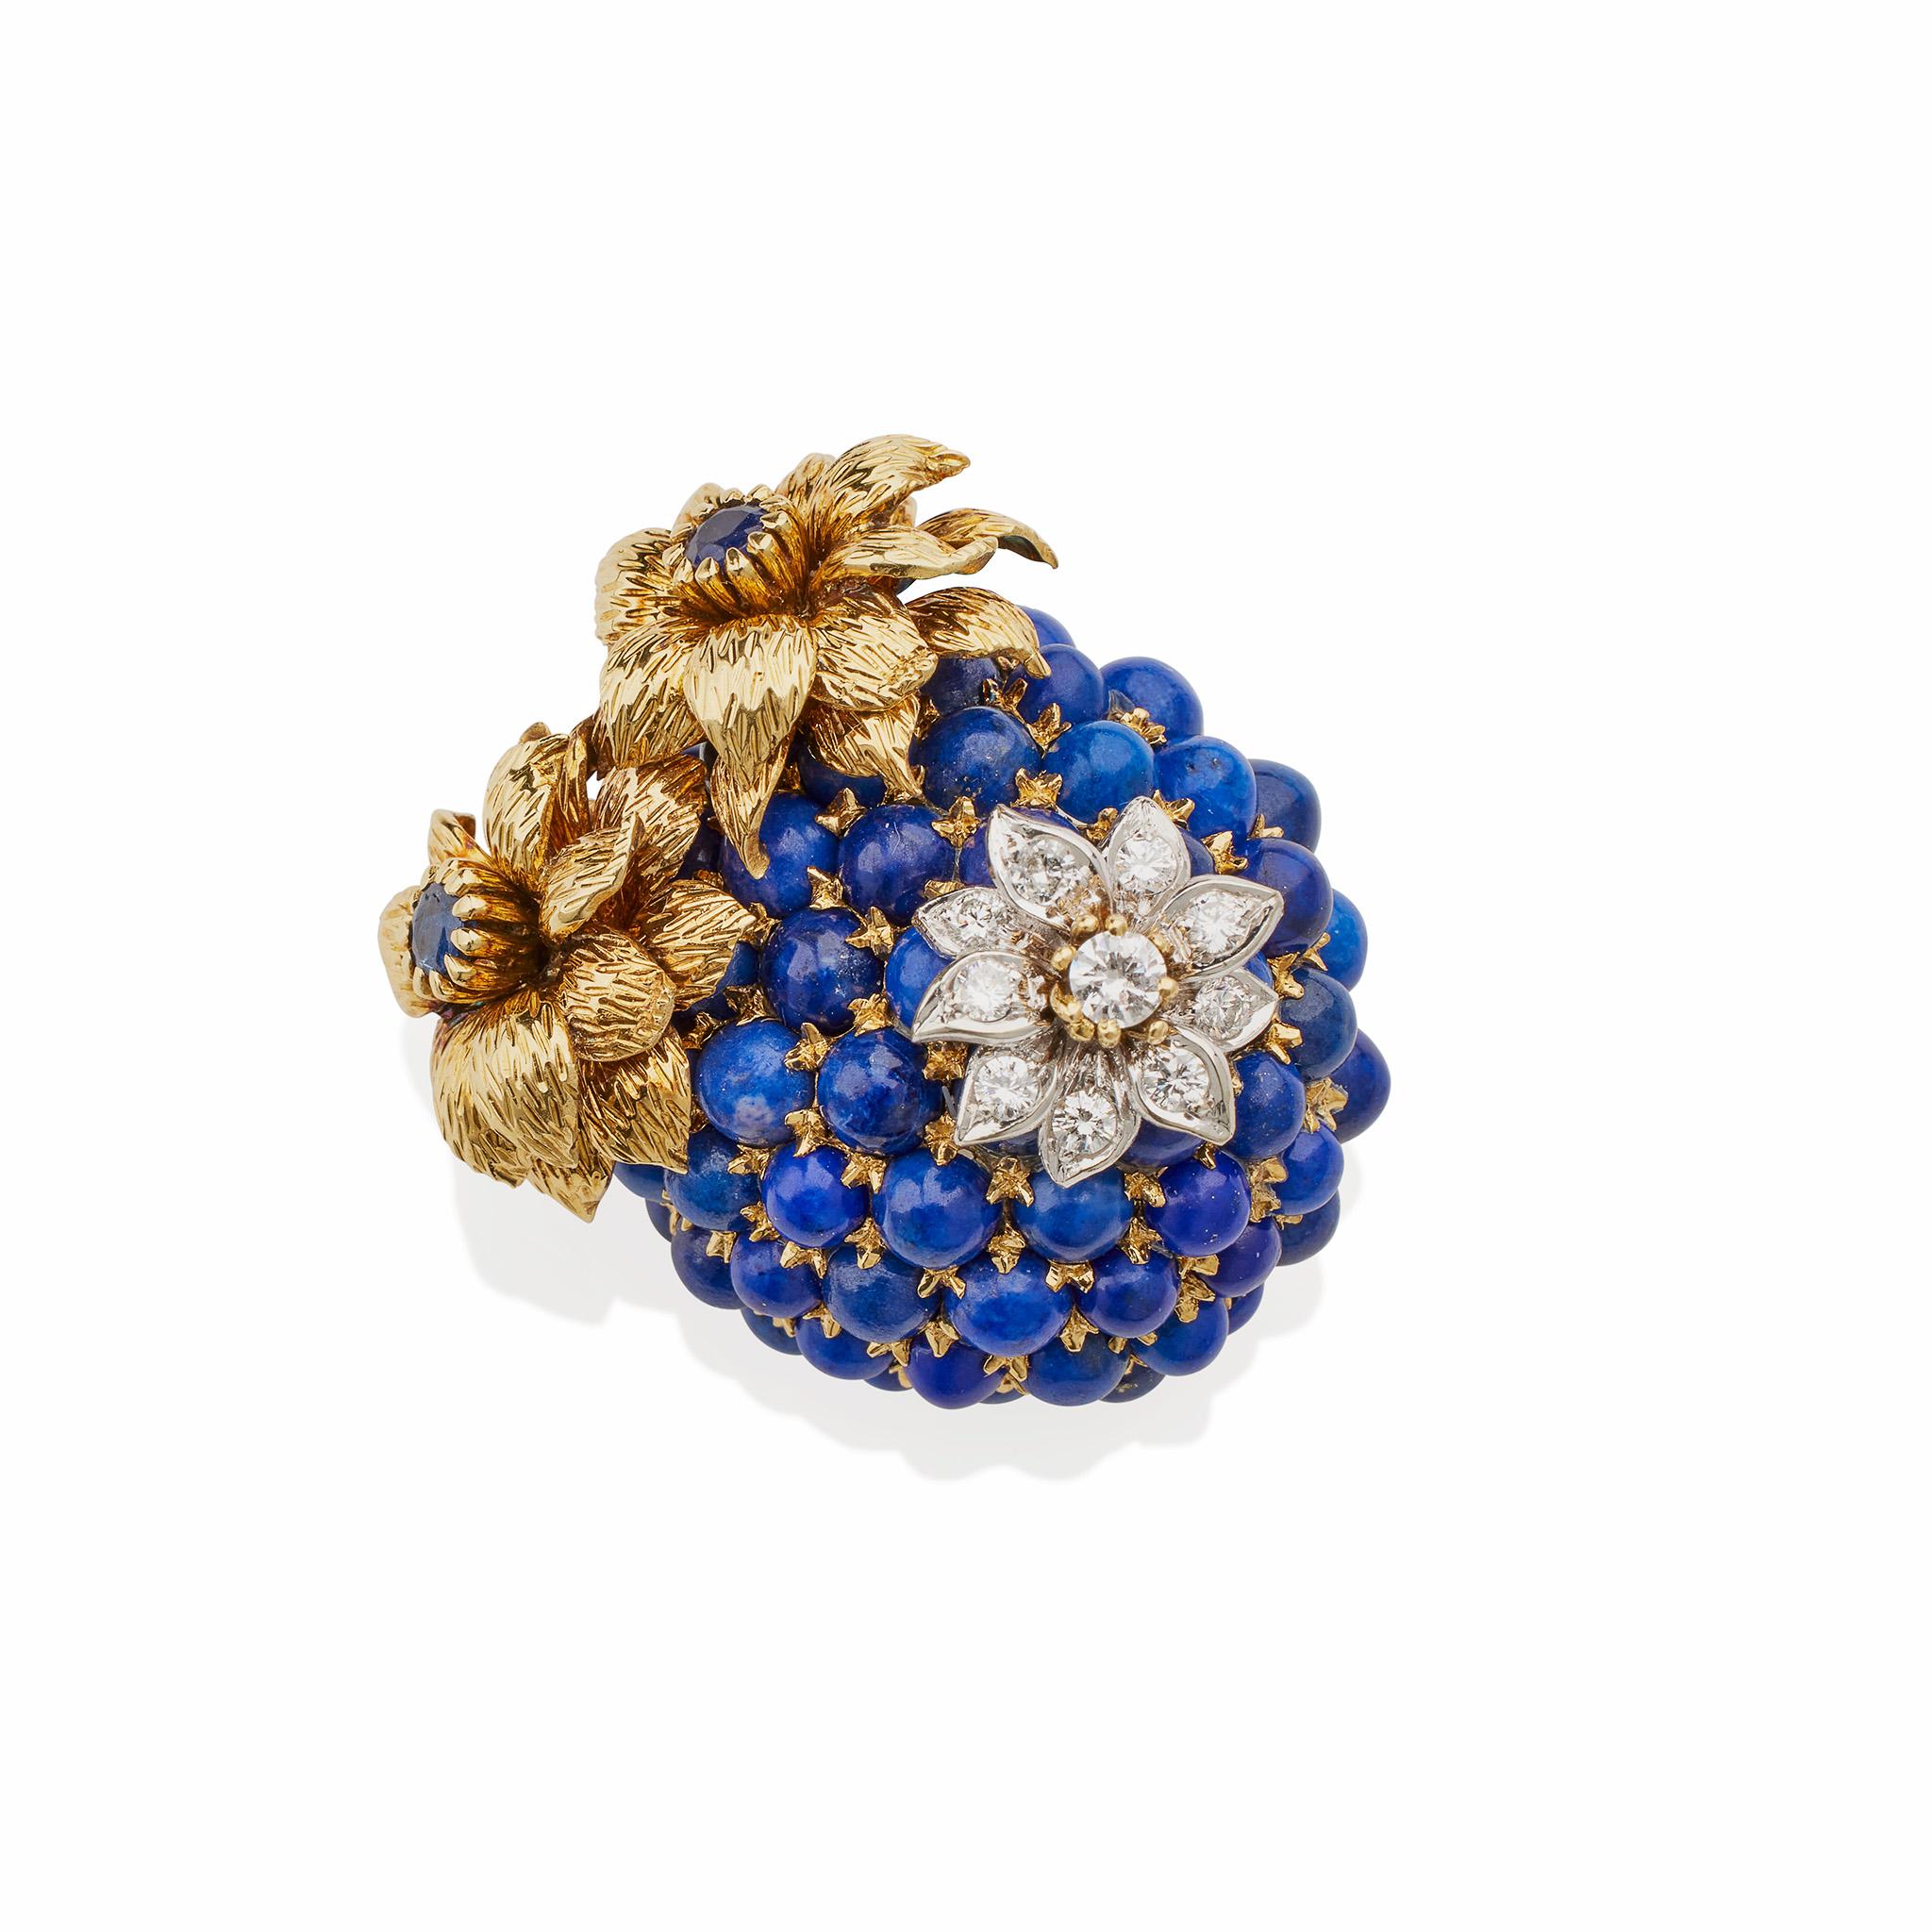 Créée en 1968-1969, cette broche Tiffany & Co. est composée d'or bicolore 18K, de lapis et de diamants. Il est conçu comme une fleur ou une baie bleue sertie de cabochons de lapis-lazuli, surmontée d'un fleuron de diamants et de deux fleurons d'or